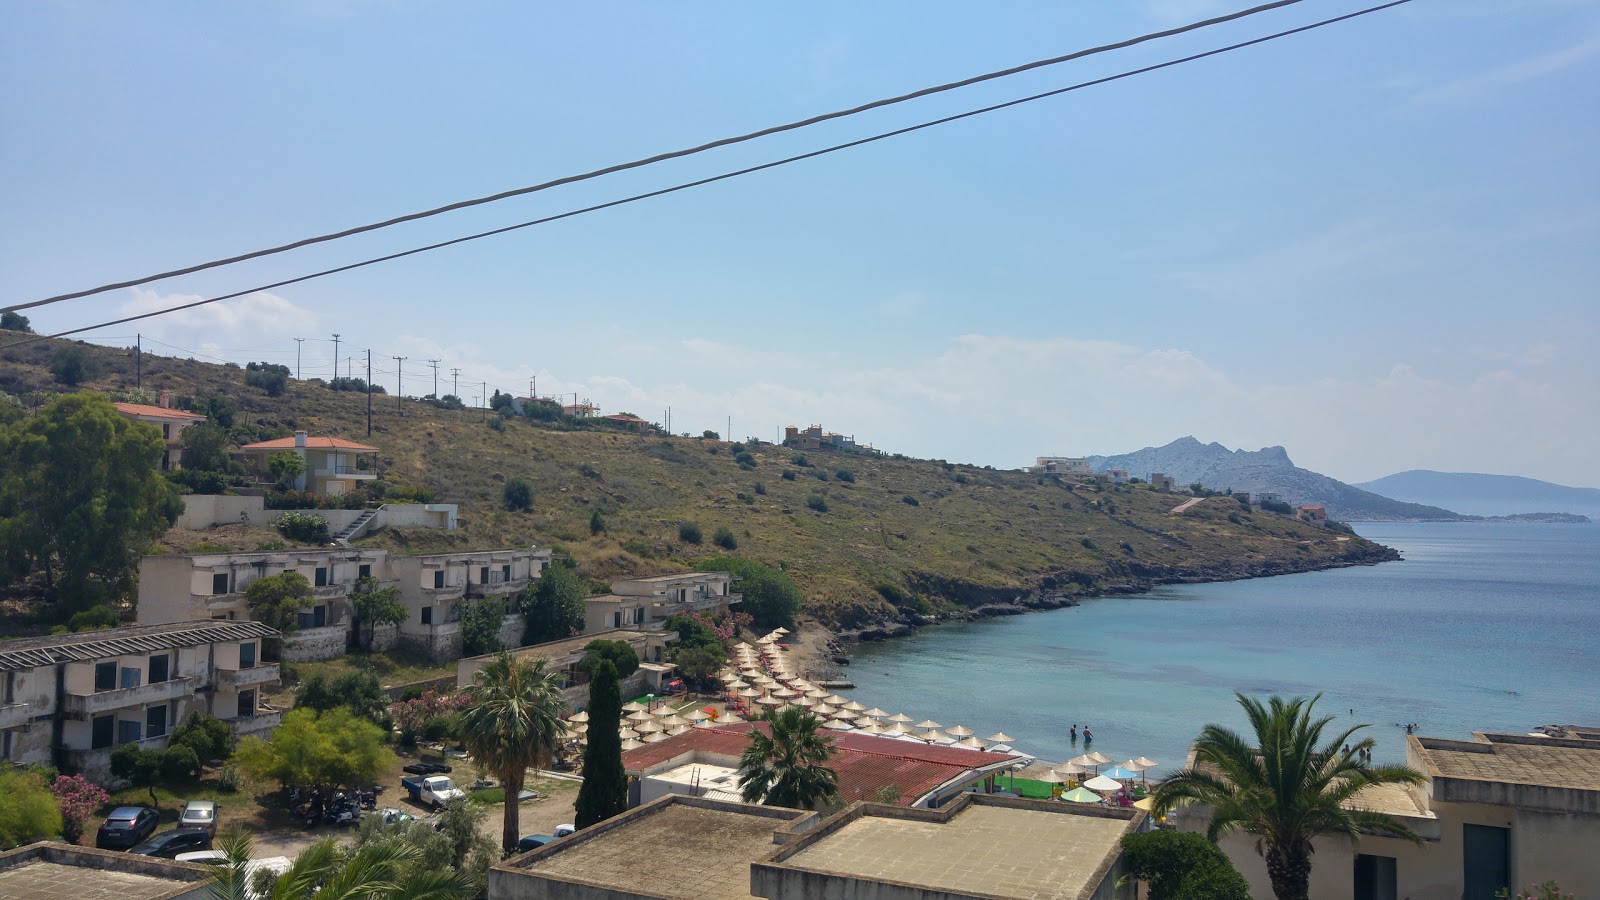 Photo of Aegina Maris beach resort area